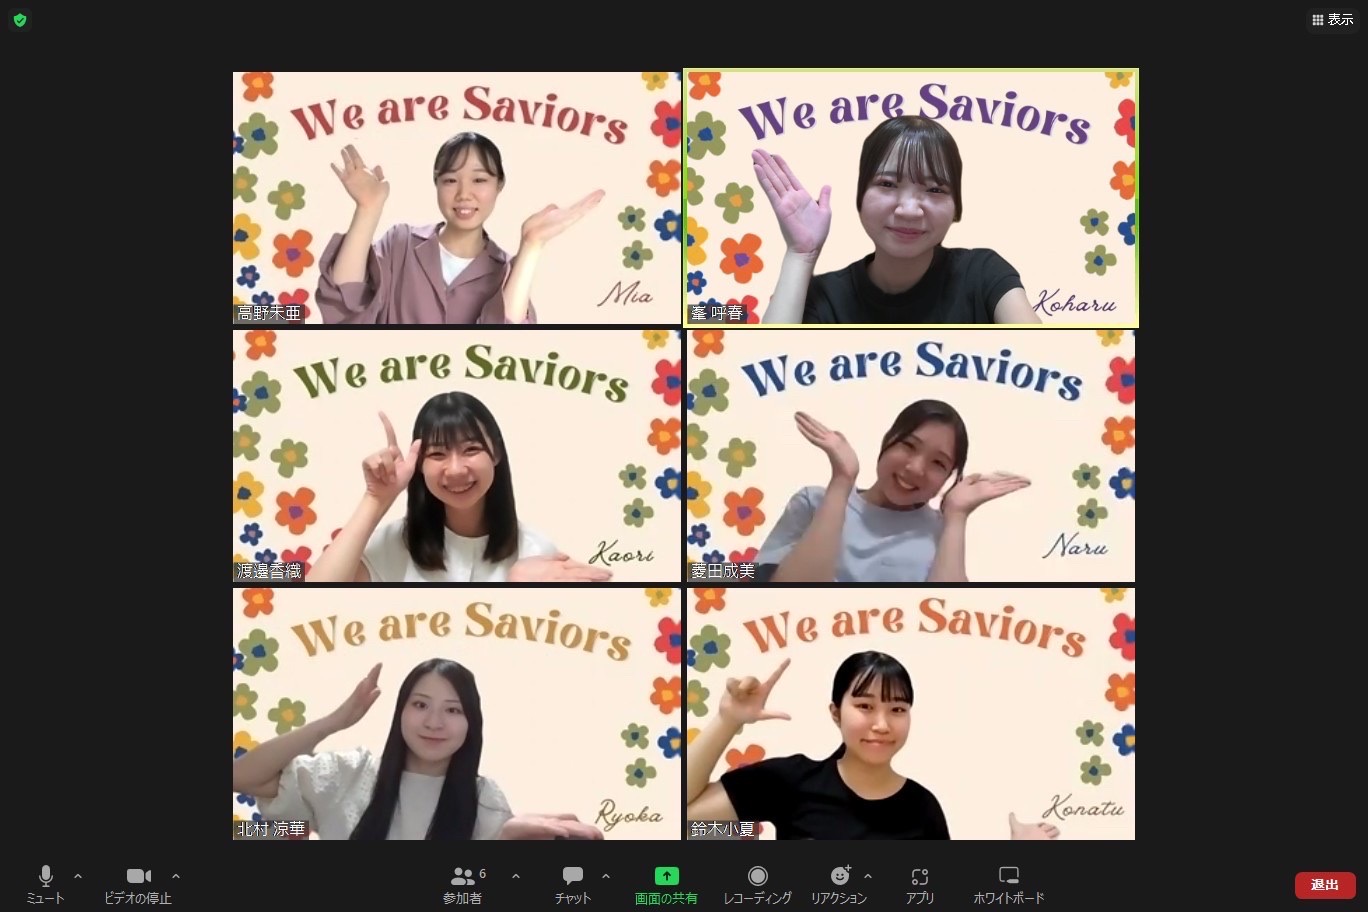 We are Saviors